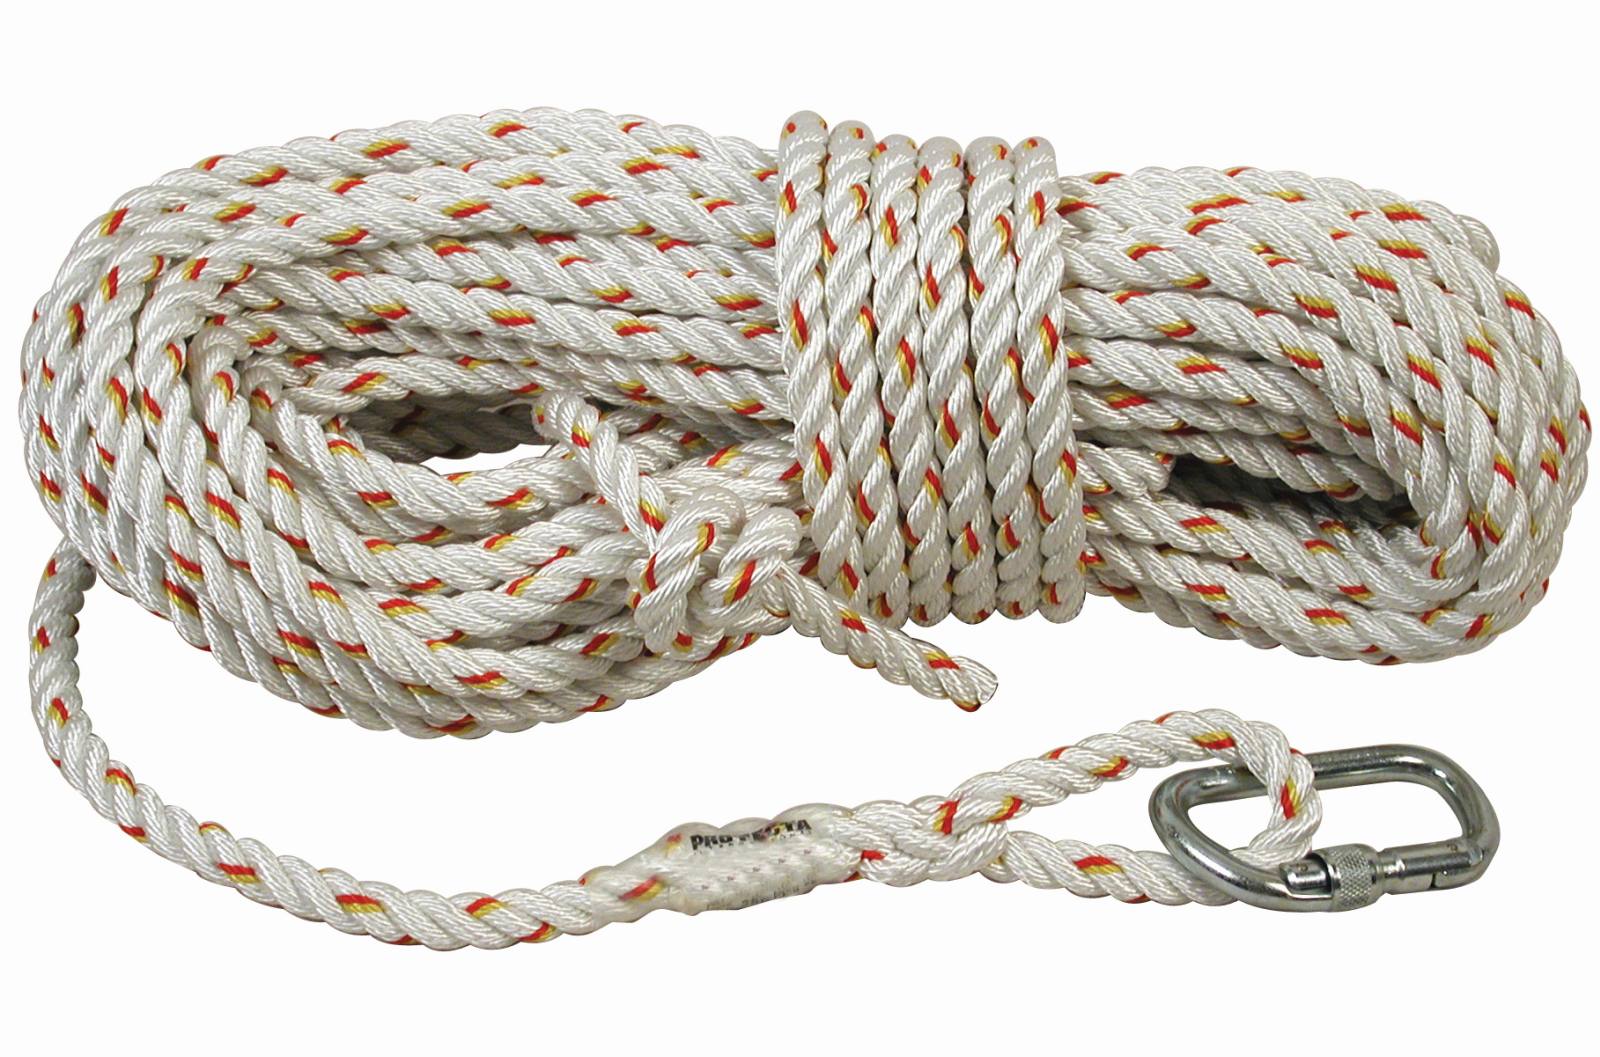 3M PROTECTA Seil für mitlaufendes Auffanggerät Cobra, Länge: 25 m, gedrehtes Seil 14 mm , AJ501 Karabiner Öffnungsweite 17 mm, 25,0 m